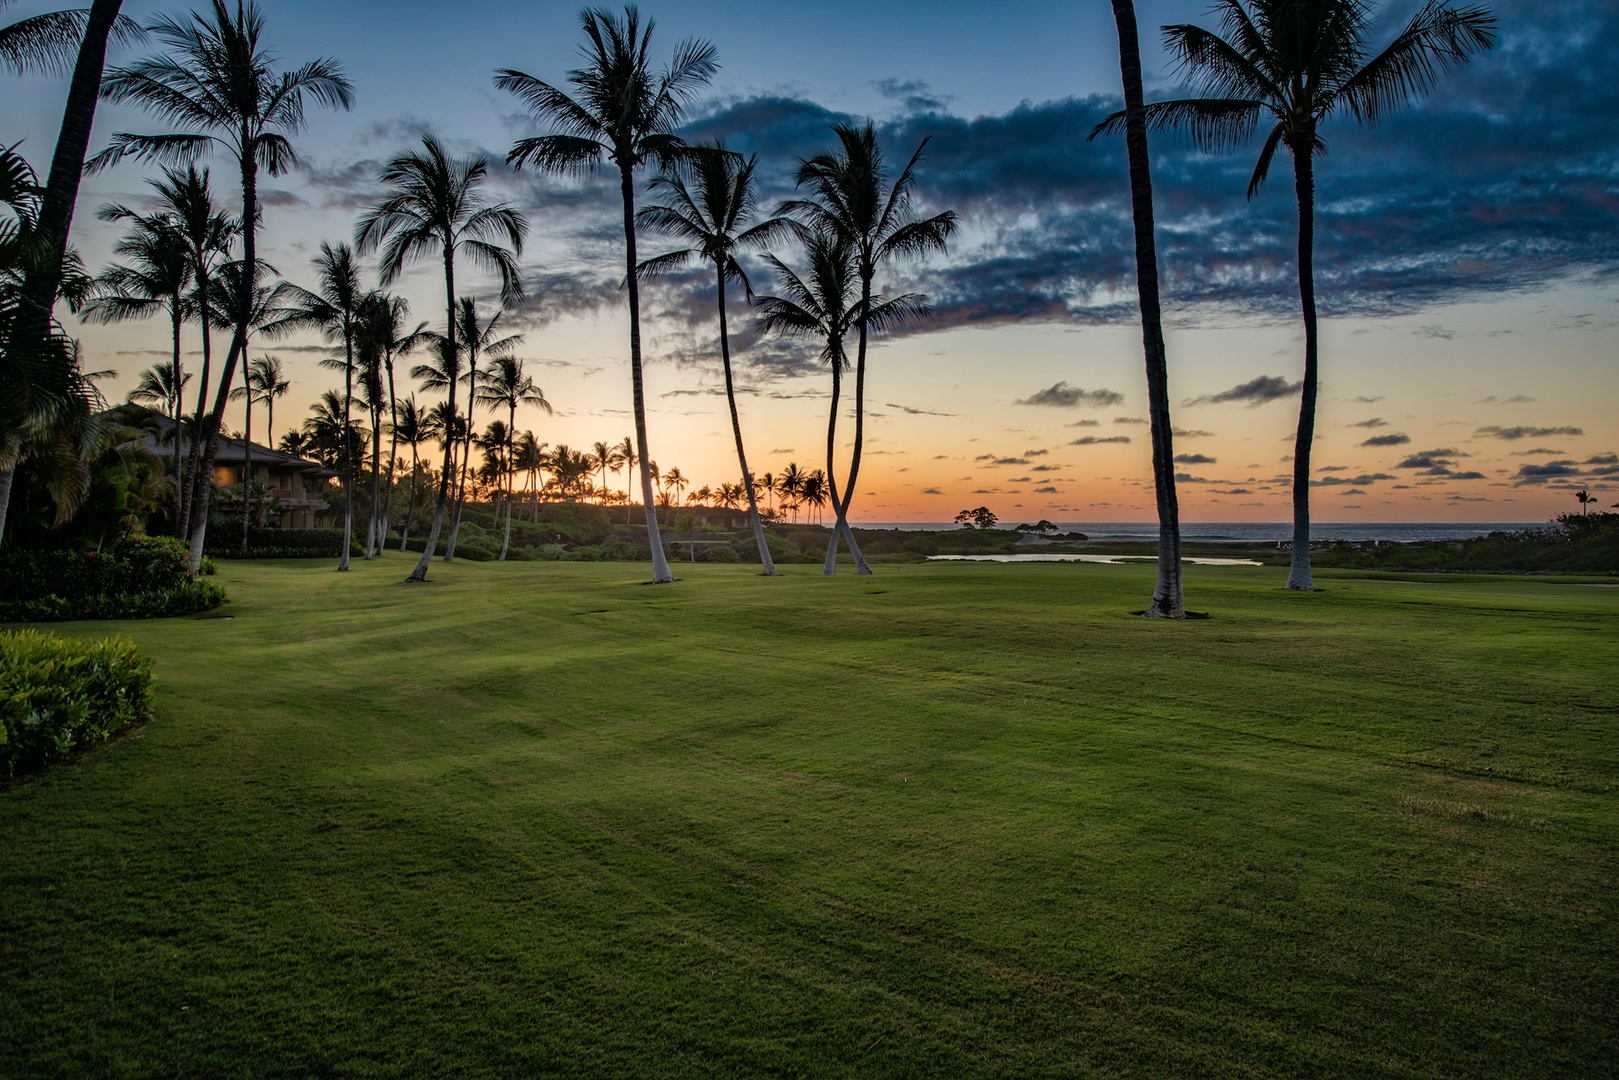 Kailua Kona Vacation Rentals, 3BD Golf Villa (3101) at Four Seasons Resort at Hualalai - Golf course view from your lanai at sunset.